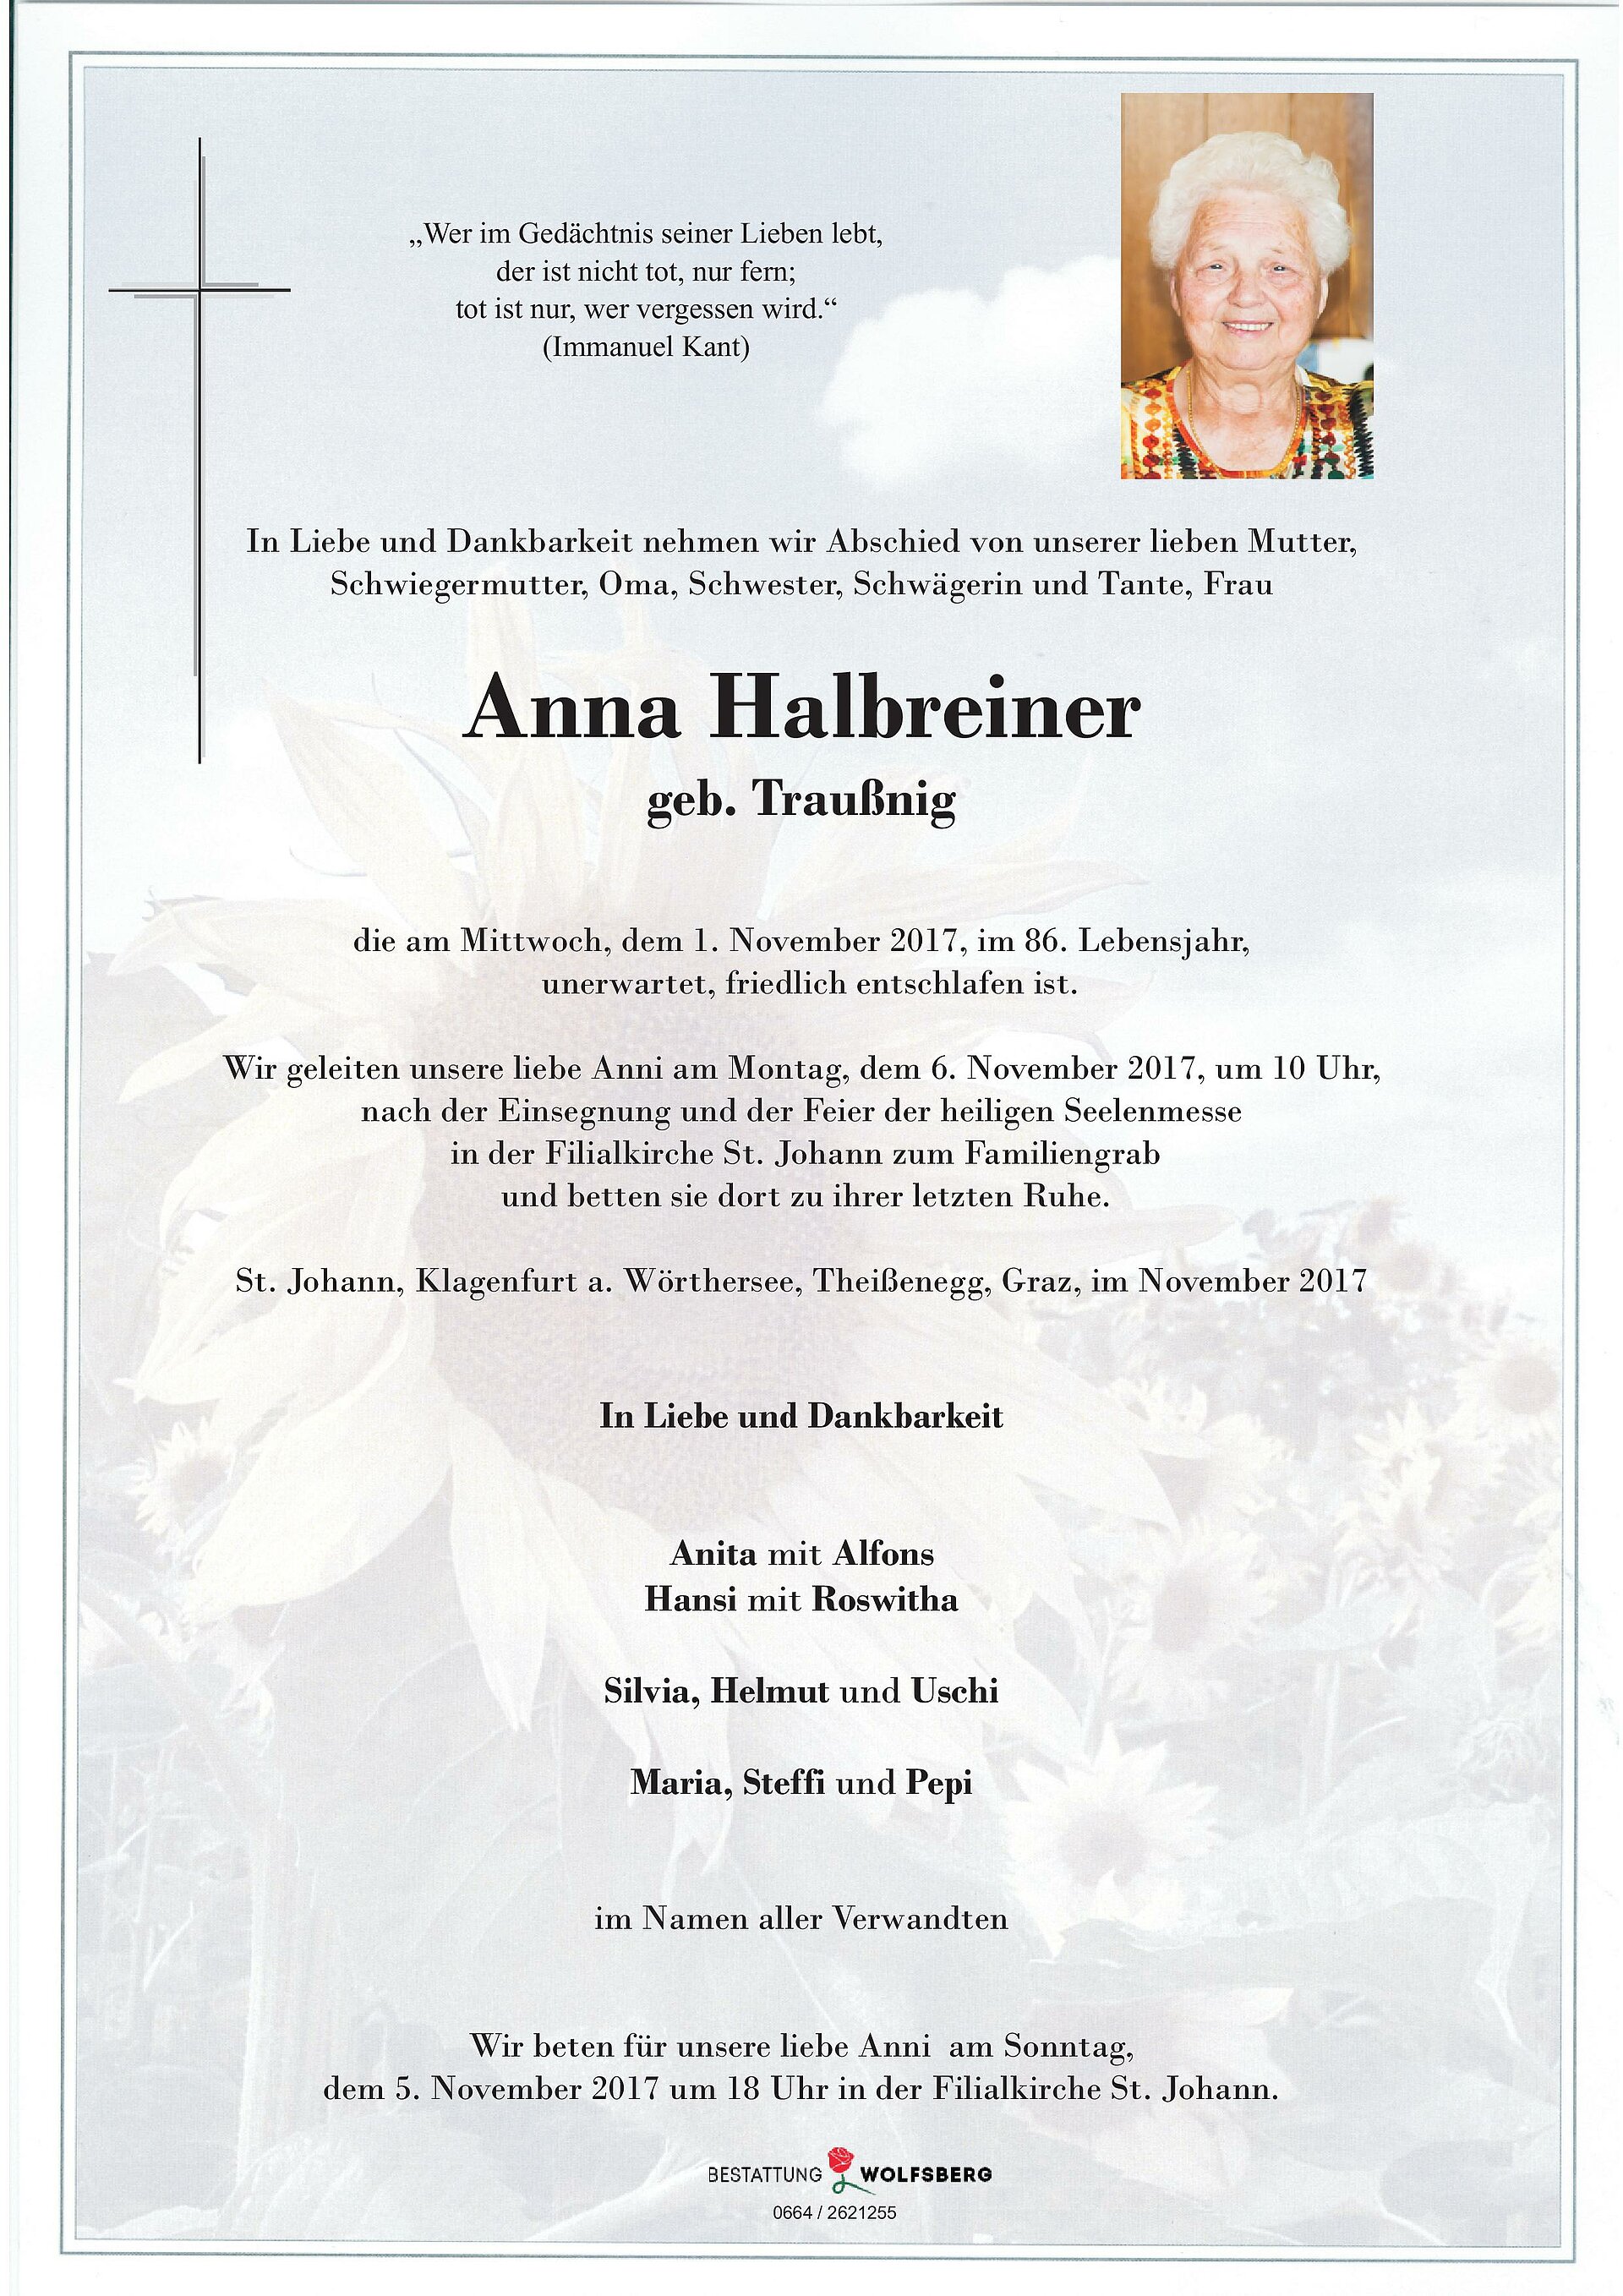 Halbreiner-Anna-page-001.jpg